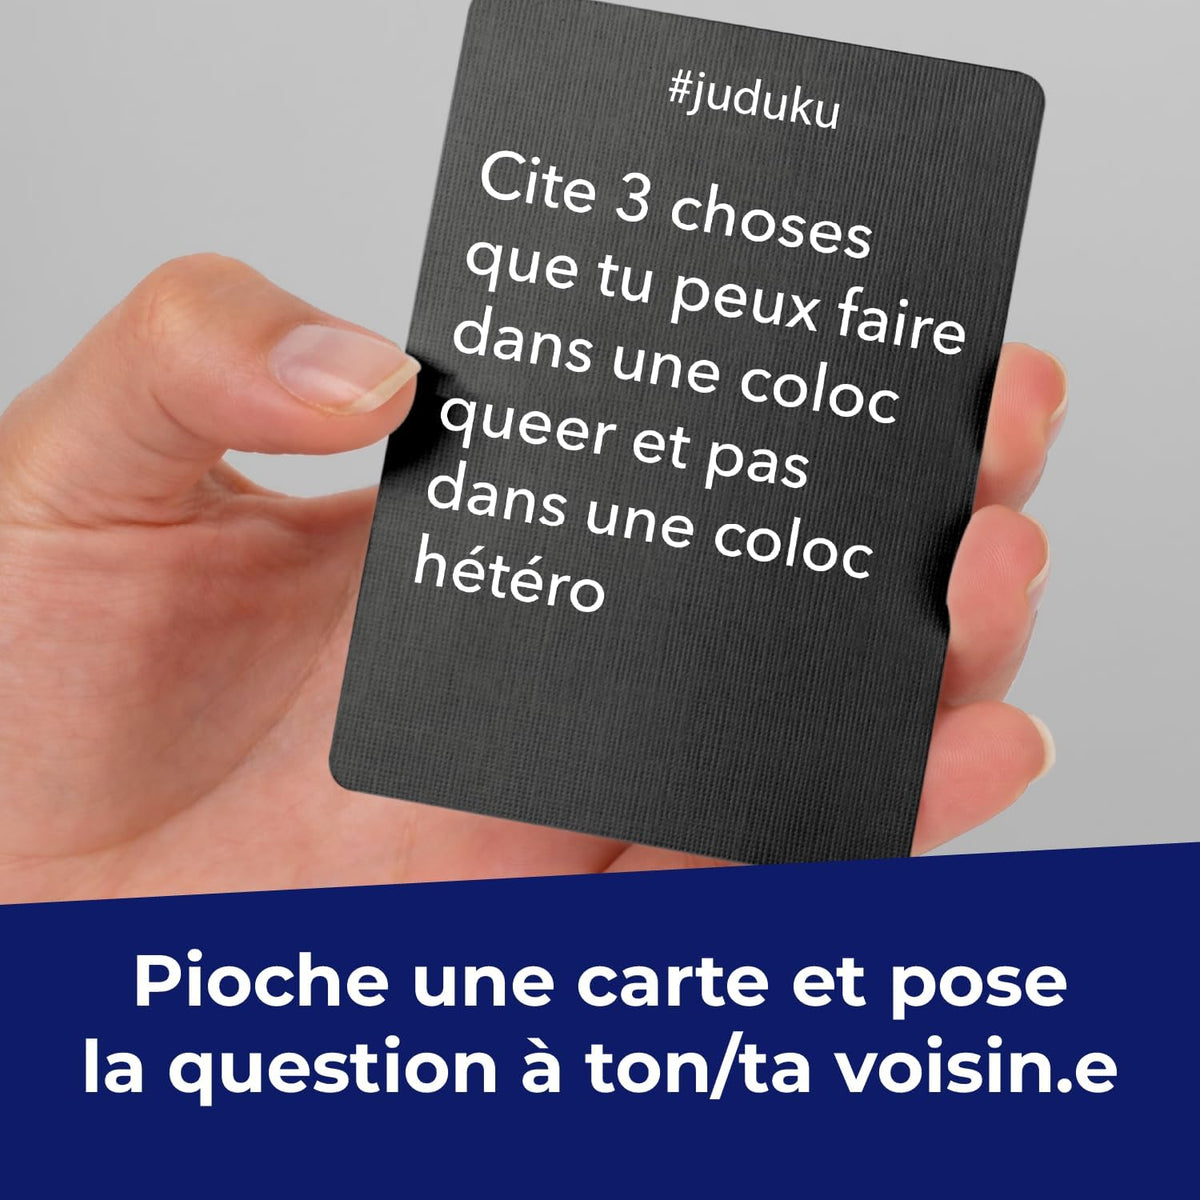 Juduku - Pride Édition - LilloJEUX - Boutique québécoise